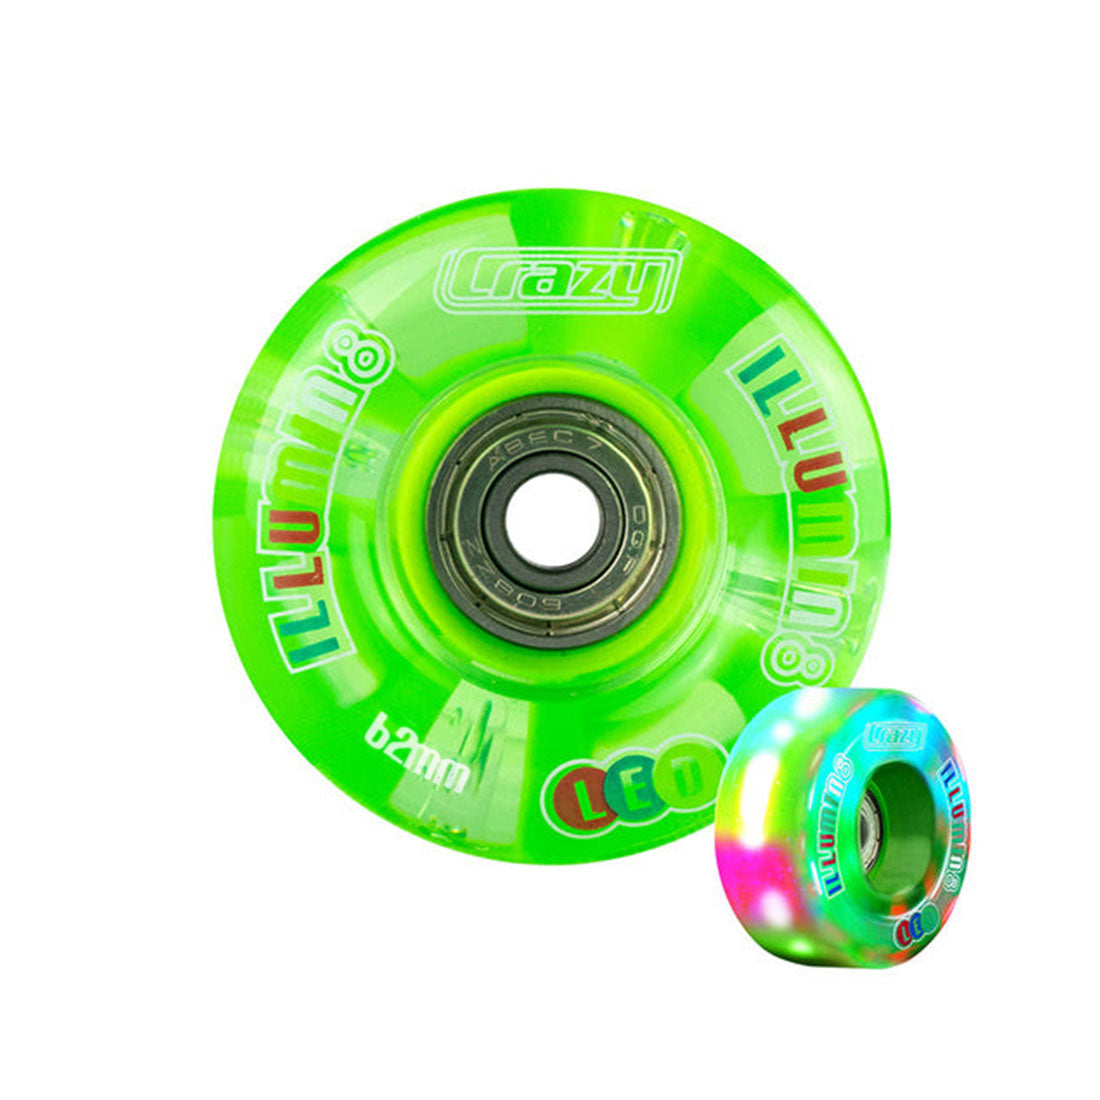 Crazy Illumin8 62mm LED Light Up Wheels 2pk Green Roller Skate Wheels